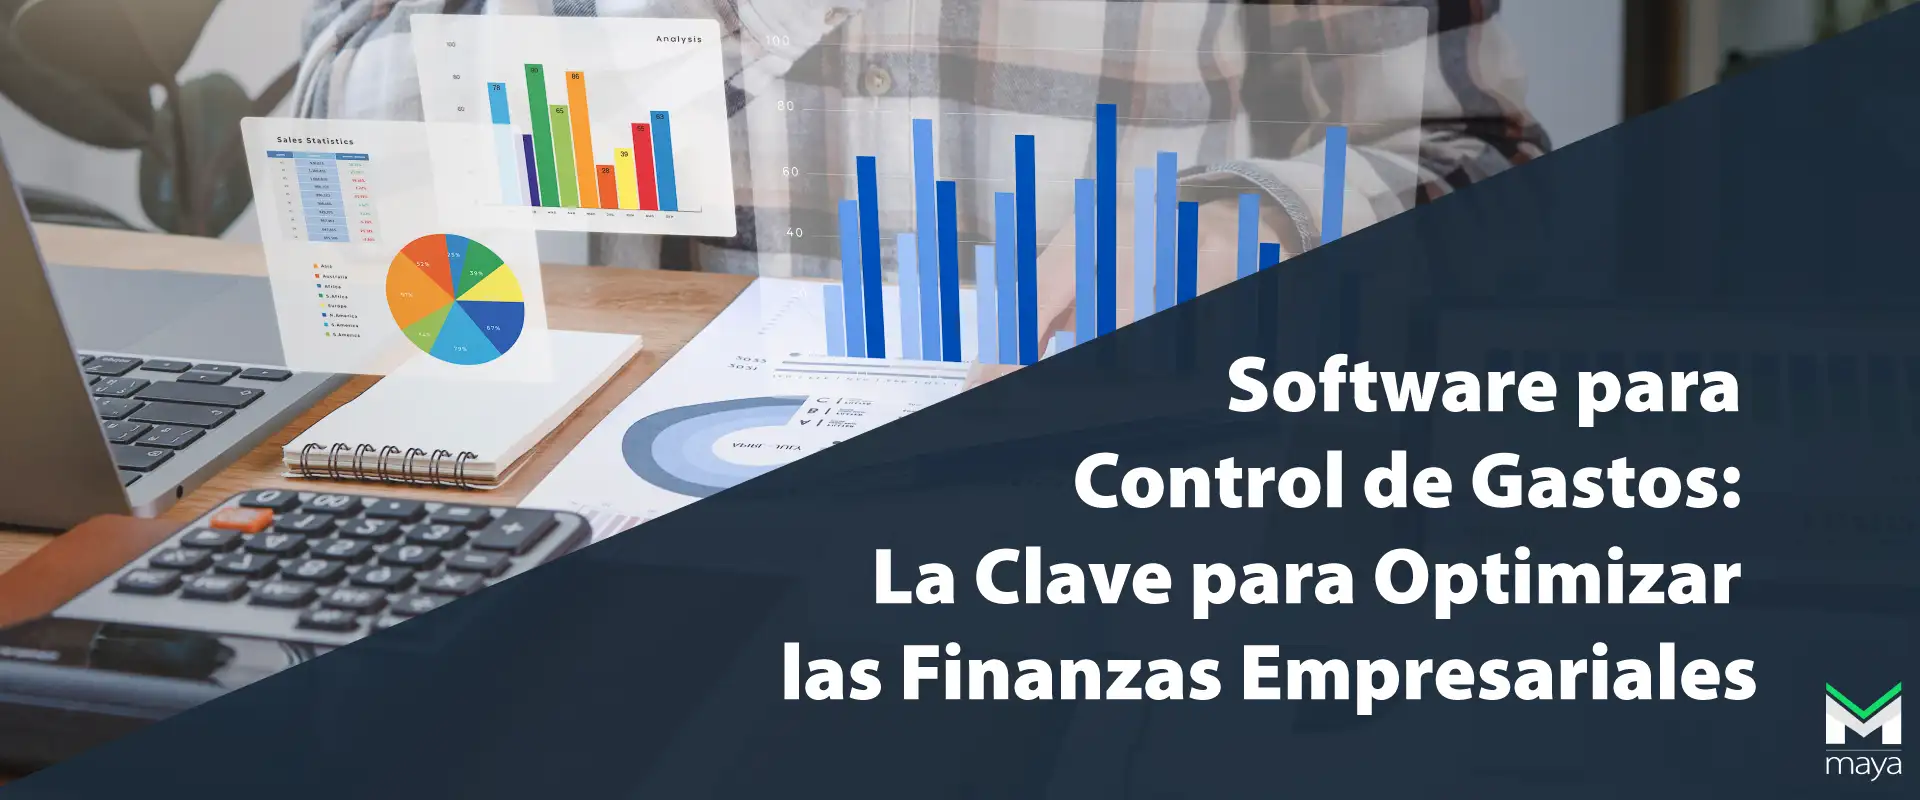 Software para Control de Gastos: La Clave para Optimizar las Finanzas Empresariales